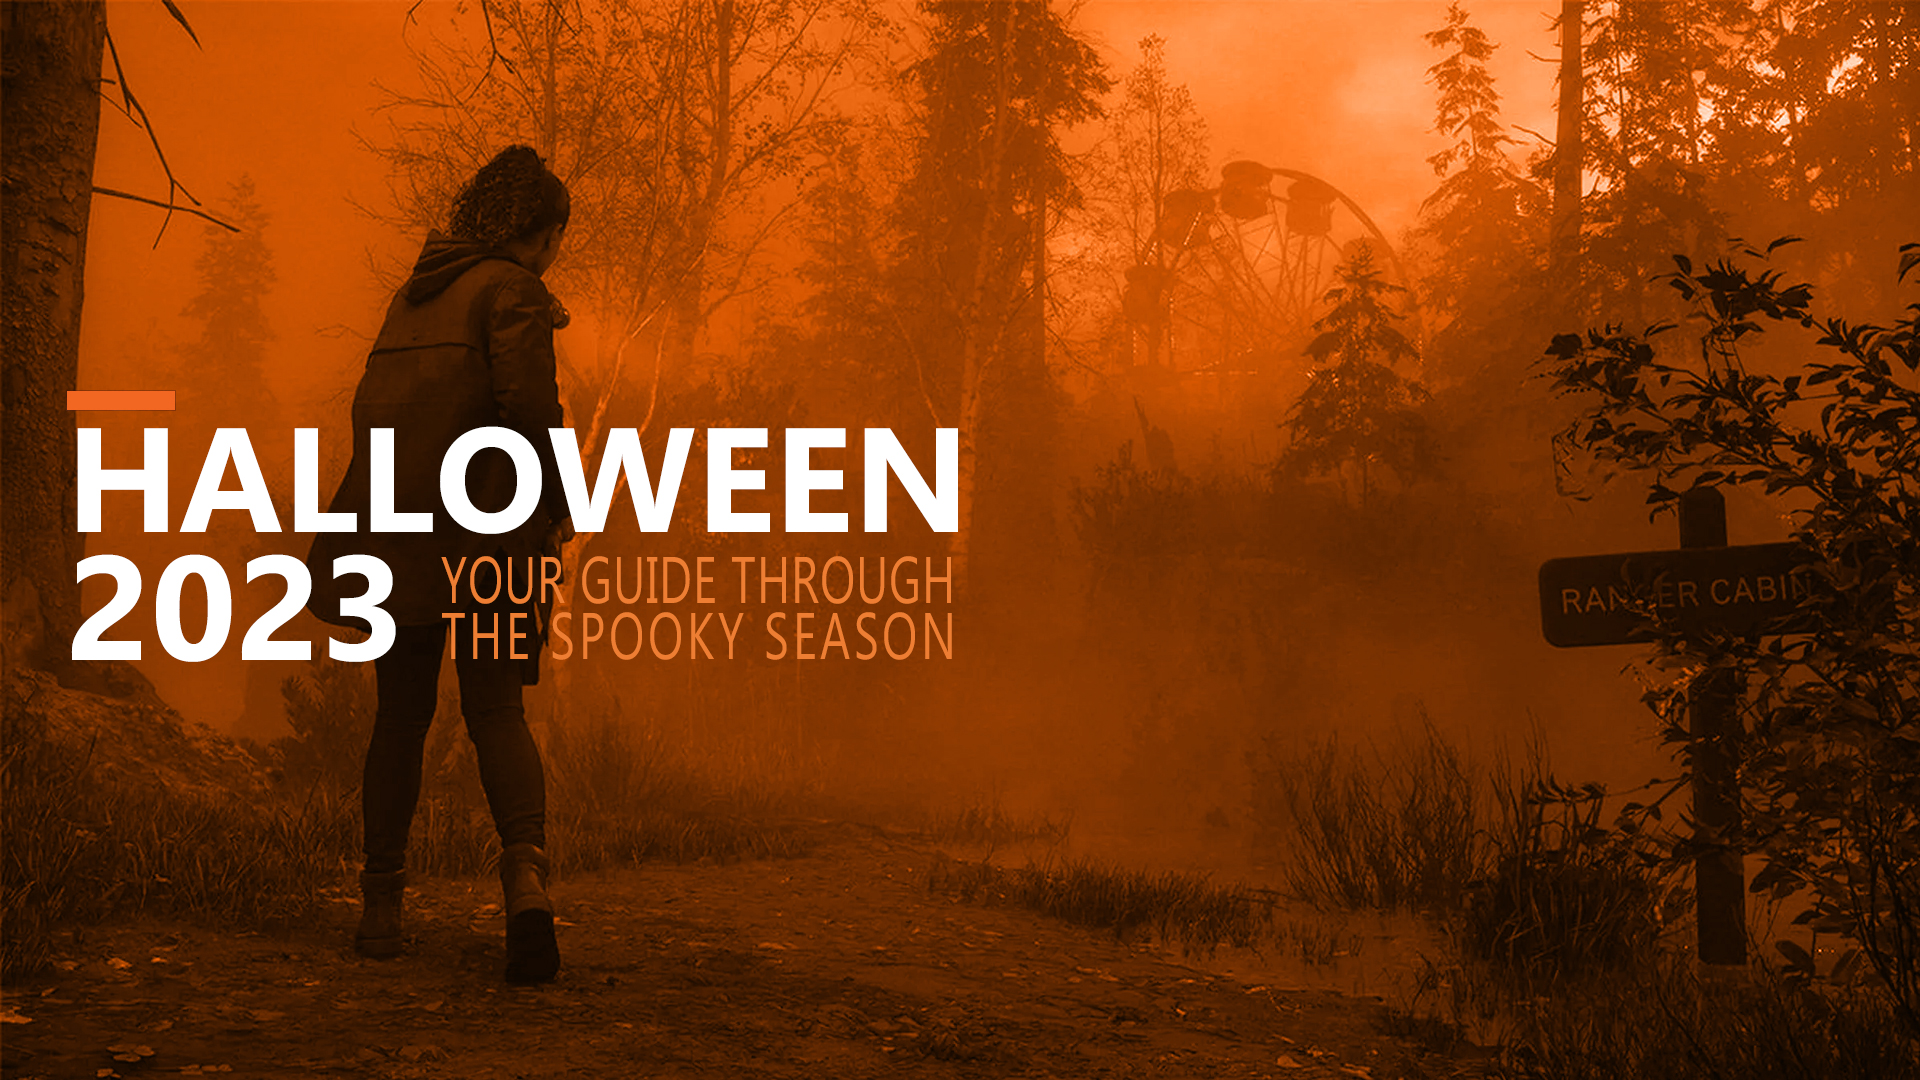 Alan Wake 2 leder vår lista över vad du kan spela på Halloween